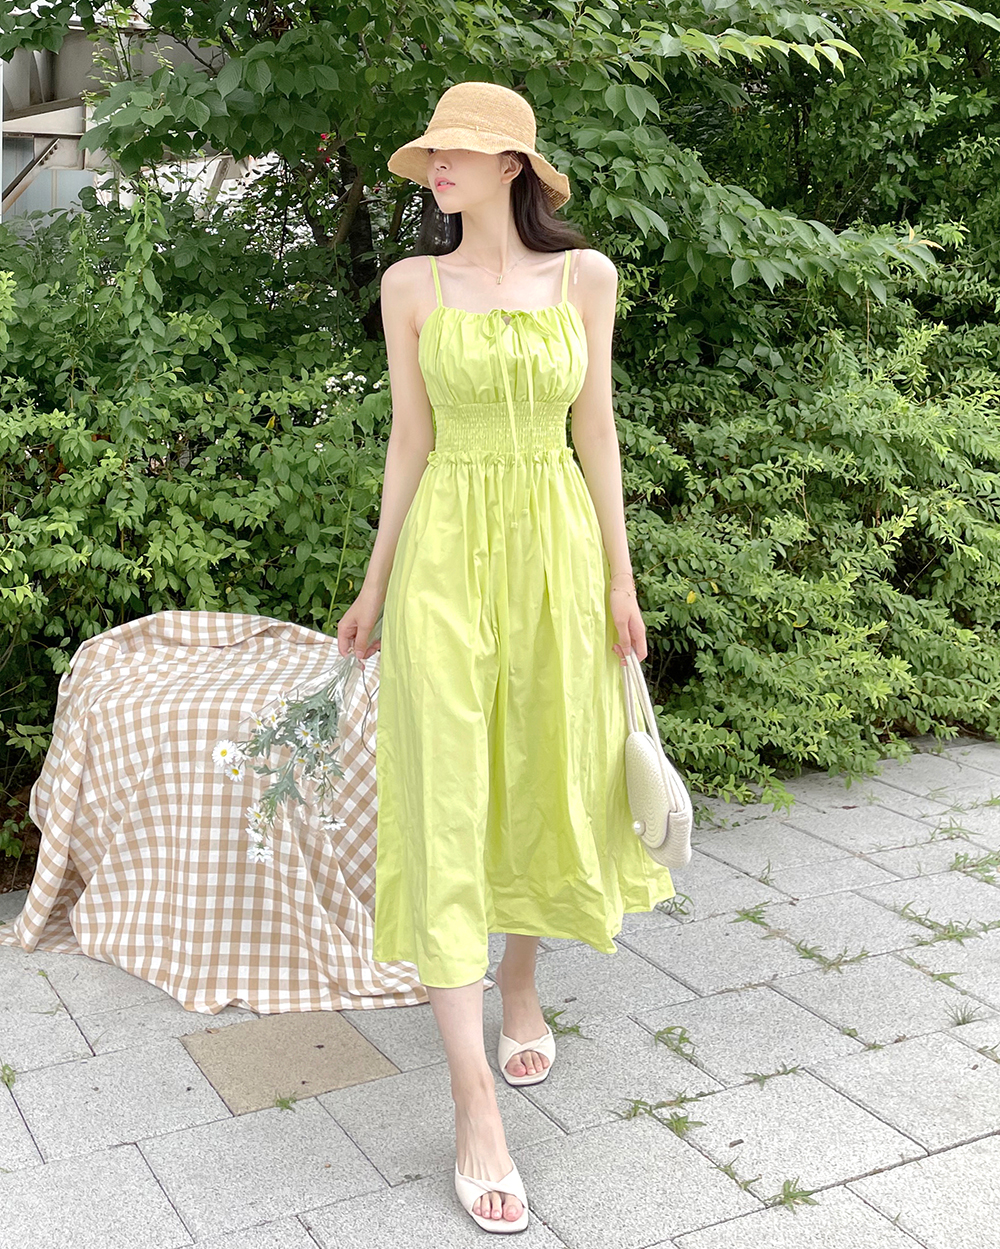 France style Korean style strap dress lady folds dress